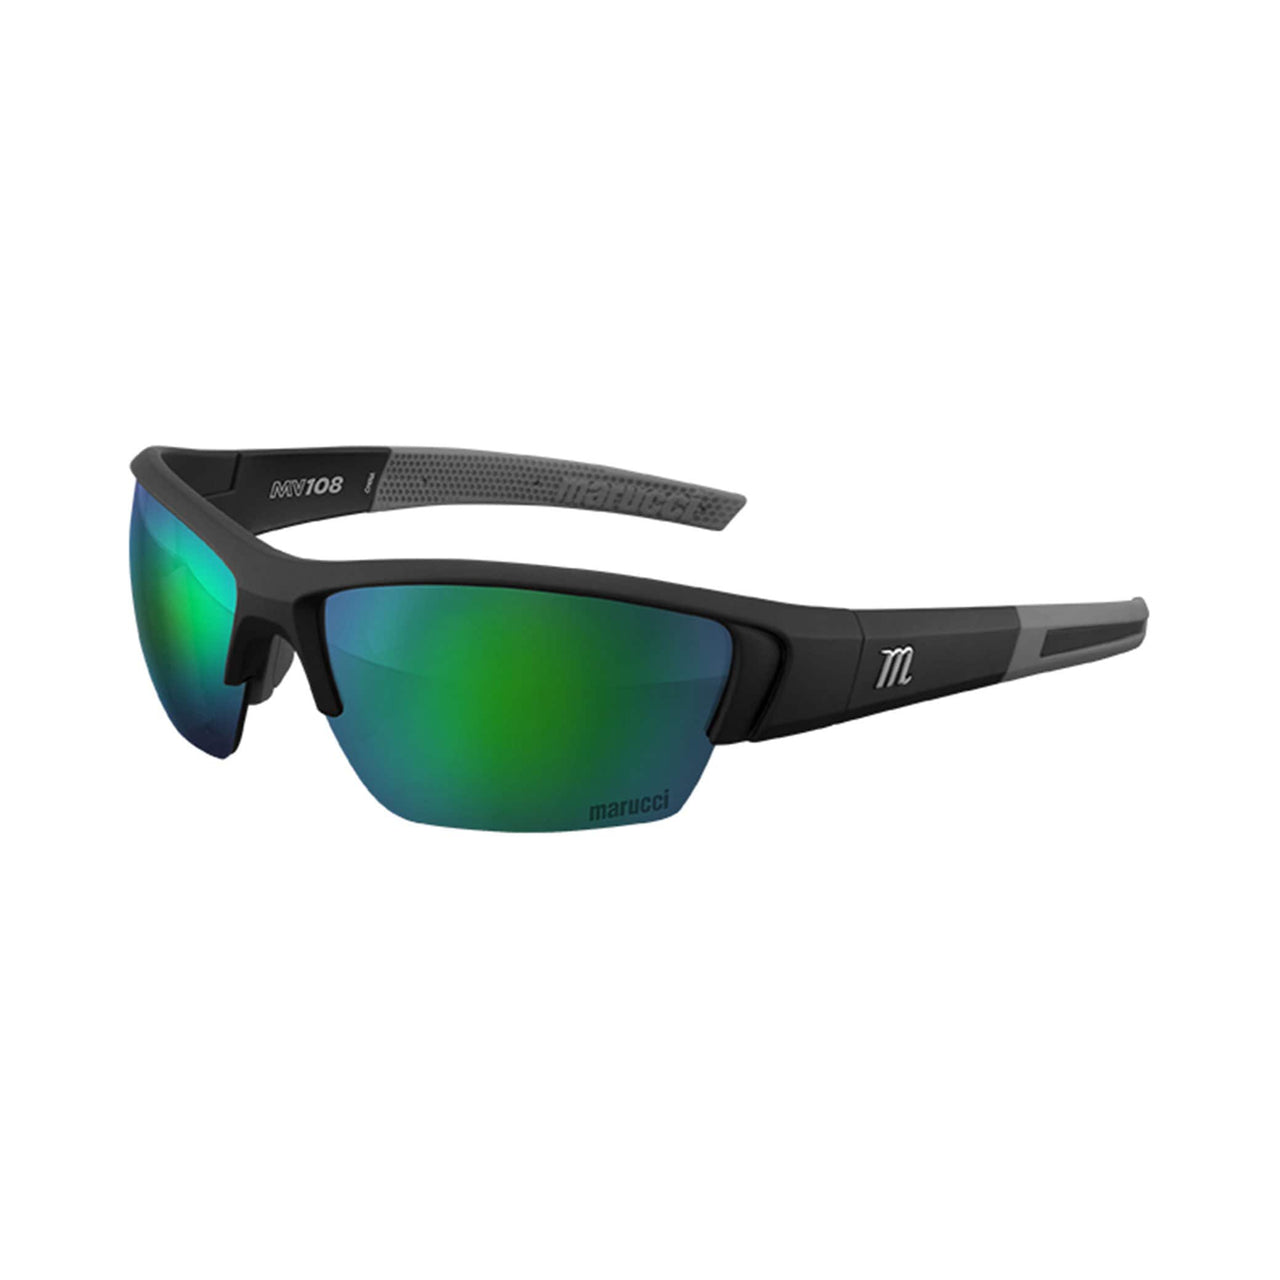 Marucci Sunglasses Matte Black - Green Lens with Green Mirror Marucci MV108 Performance Sunglasses